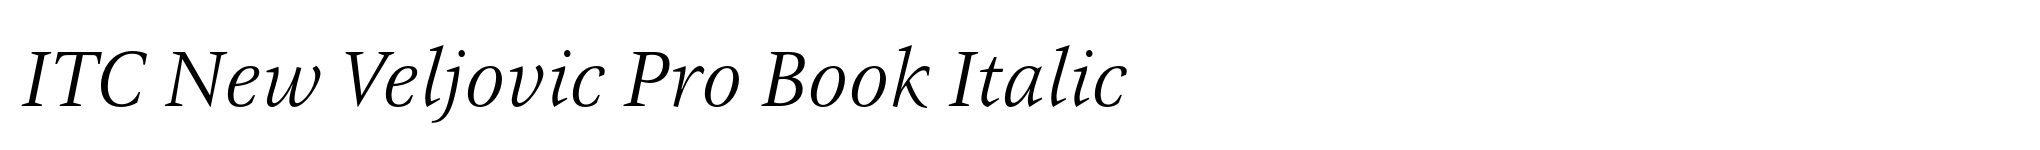 ITC New Veljovic Pro Book Italic image